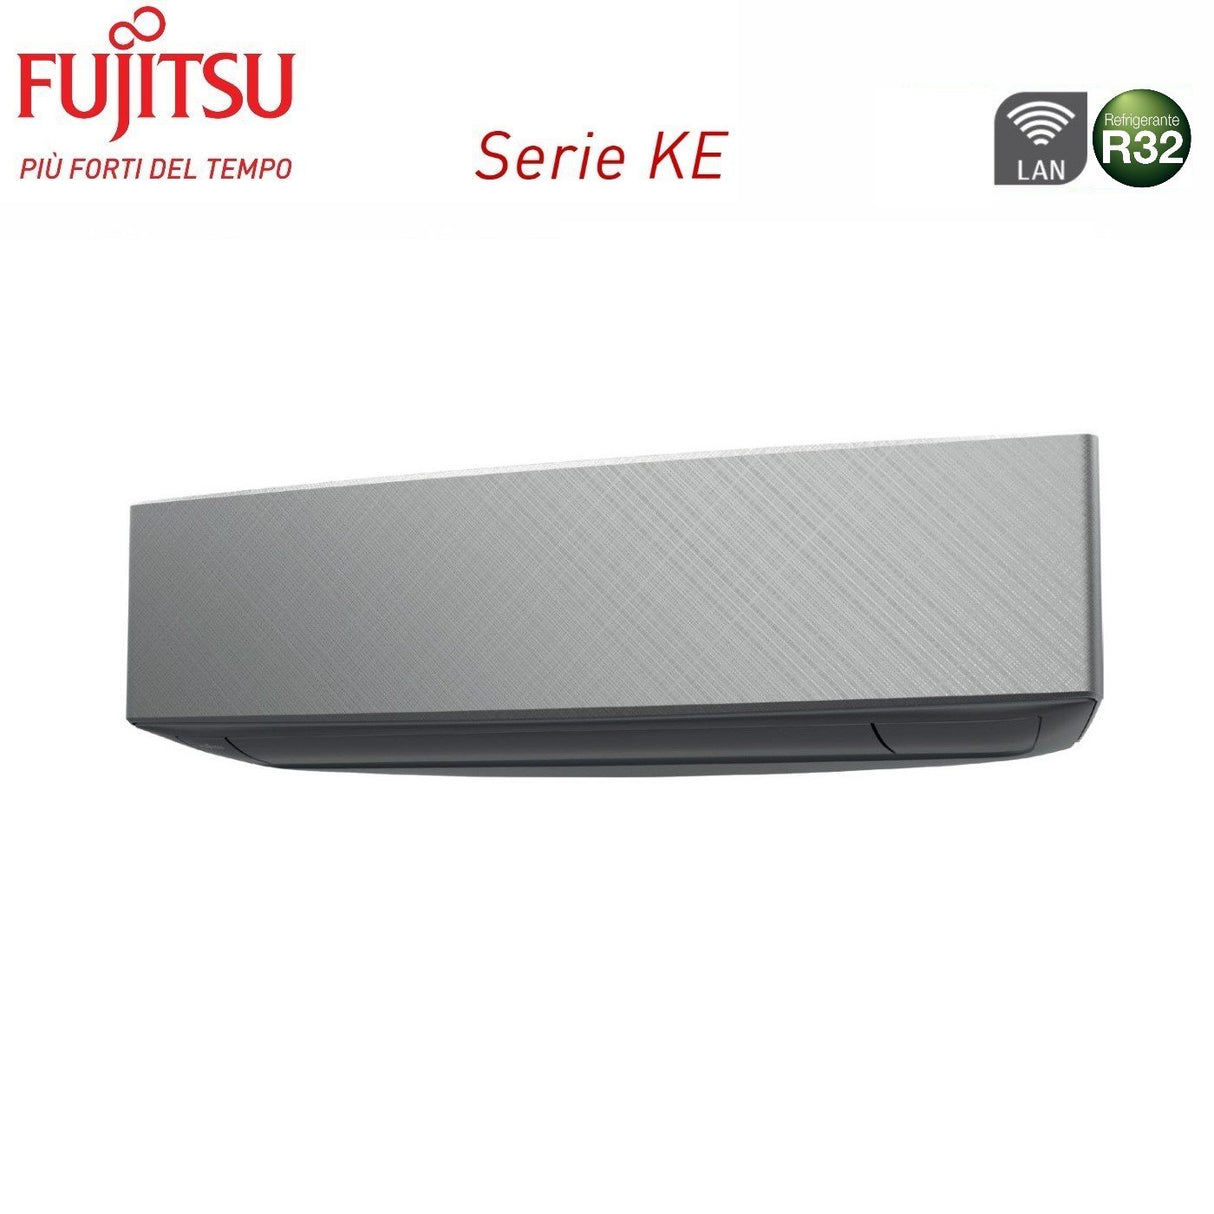 immagine-3-fujitsu-climatizzatore-condizionatore-fujitsu-dual-split-inverter-serie-ke-silver-1212-con-aoyg18kbta2-r-32-wi-fi-integrato-1200012000-colore-argento